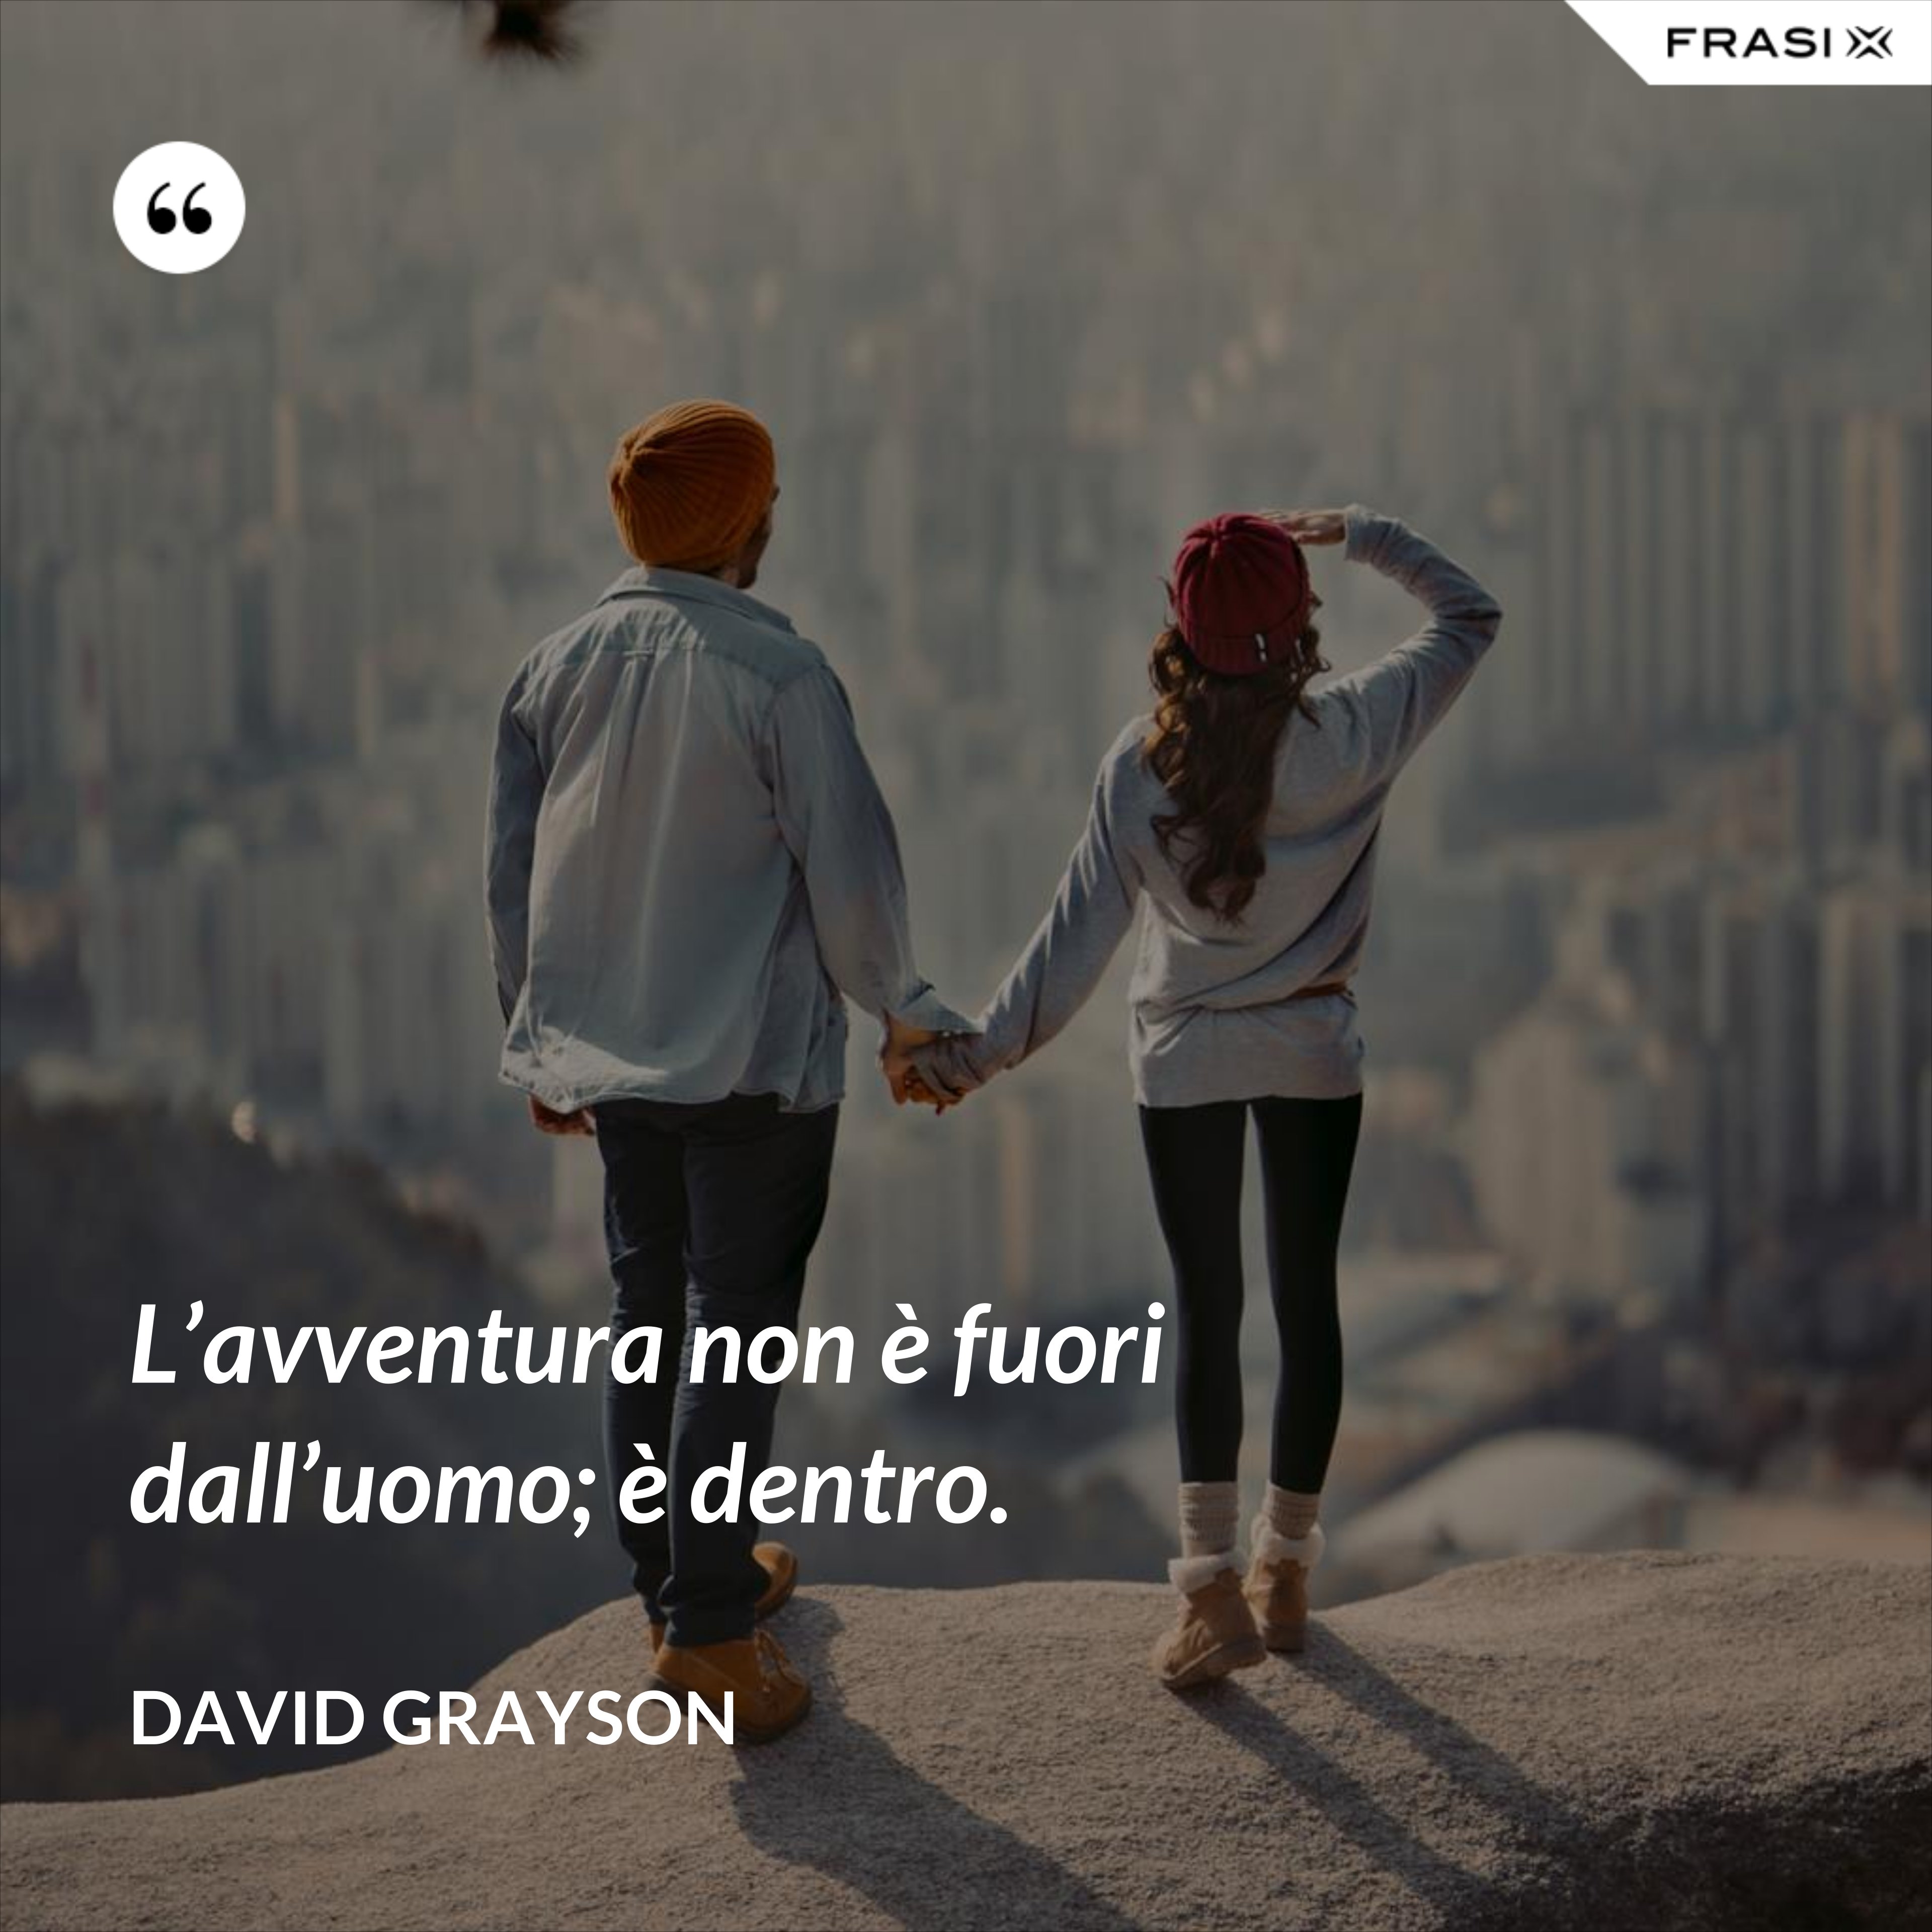 L’avventura non è fuori dall’uomo; è dentro. - David Grayson